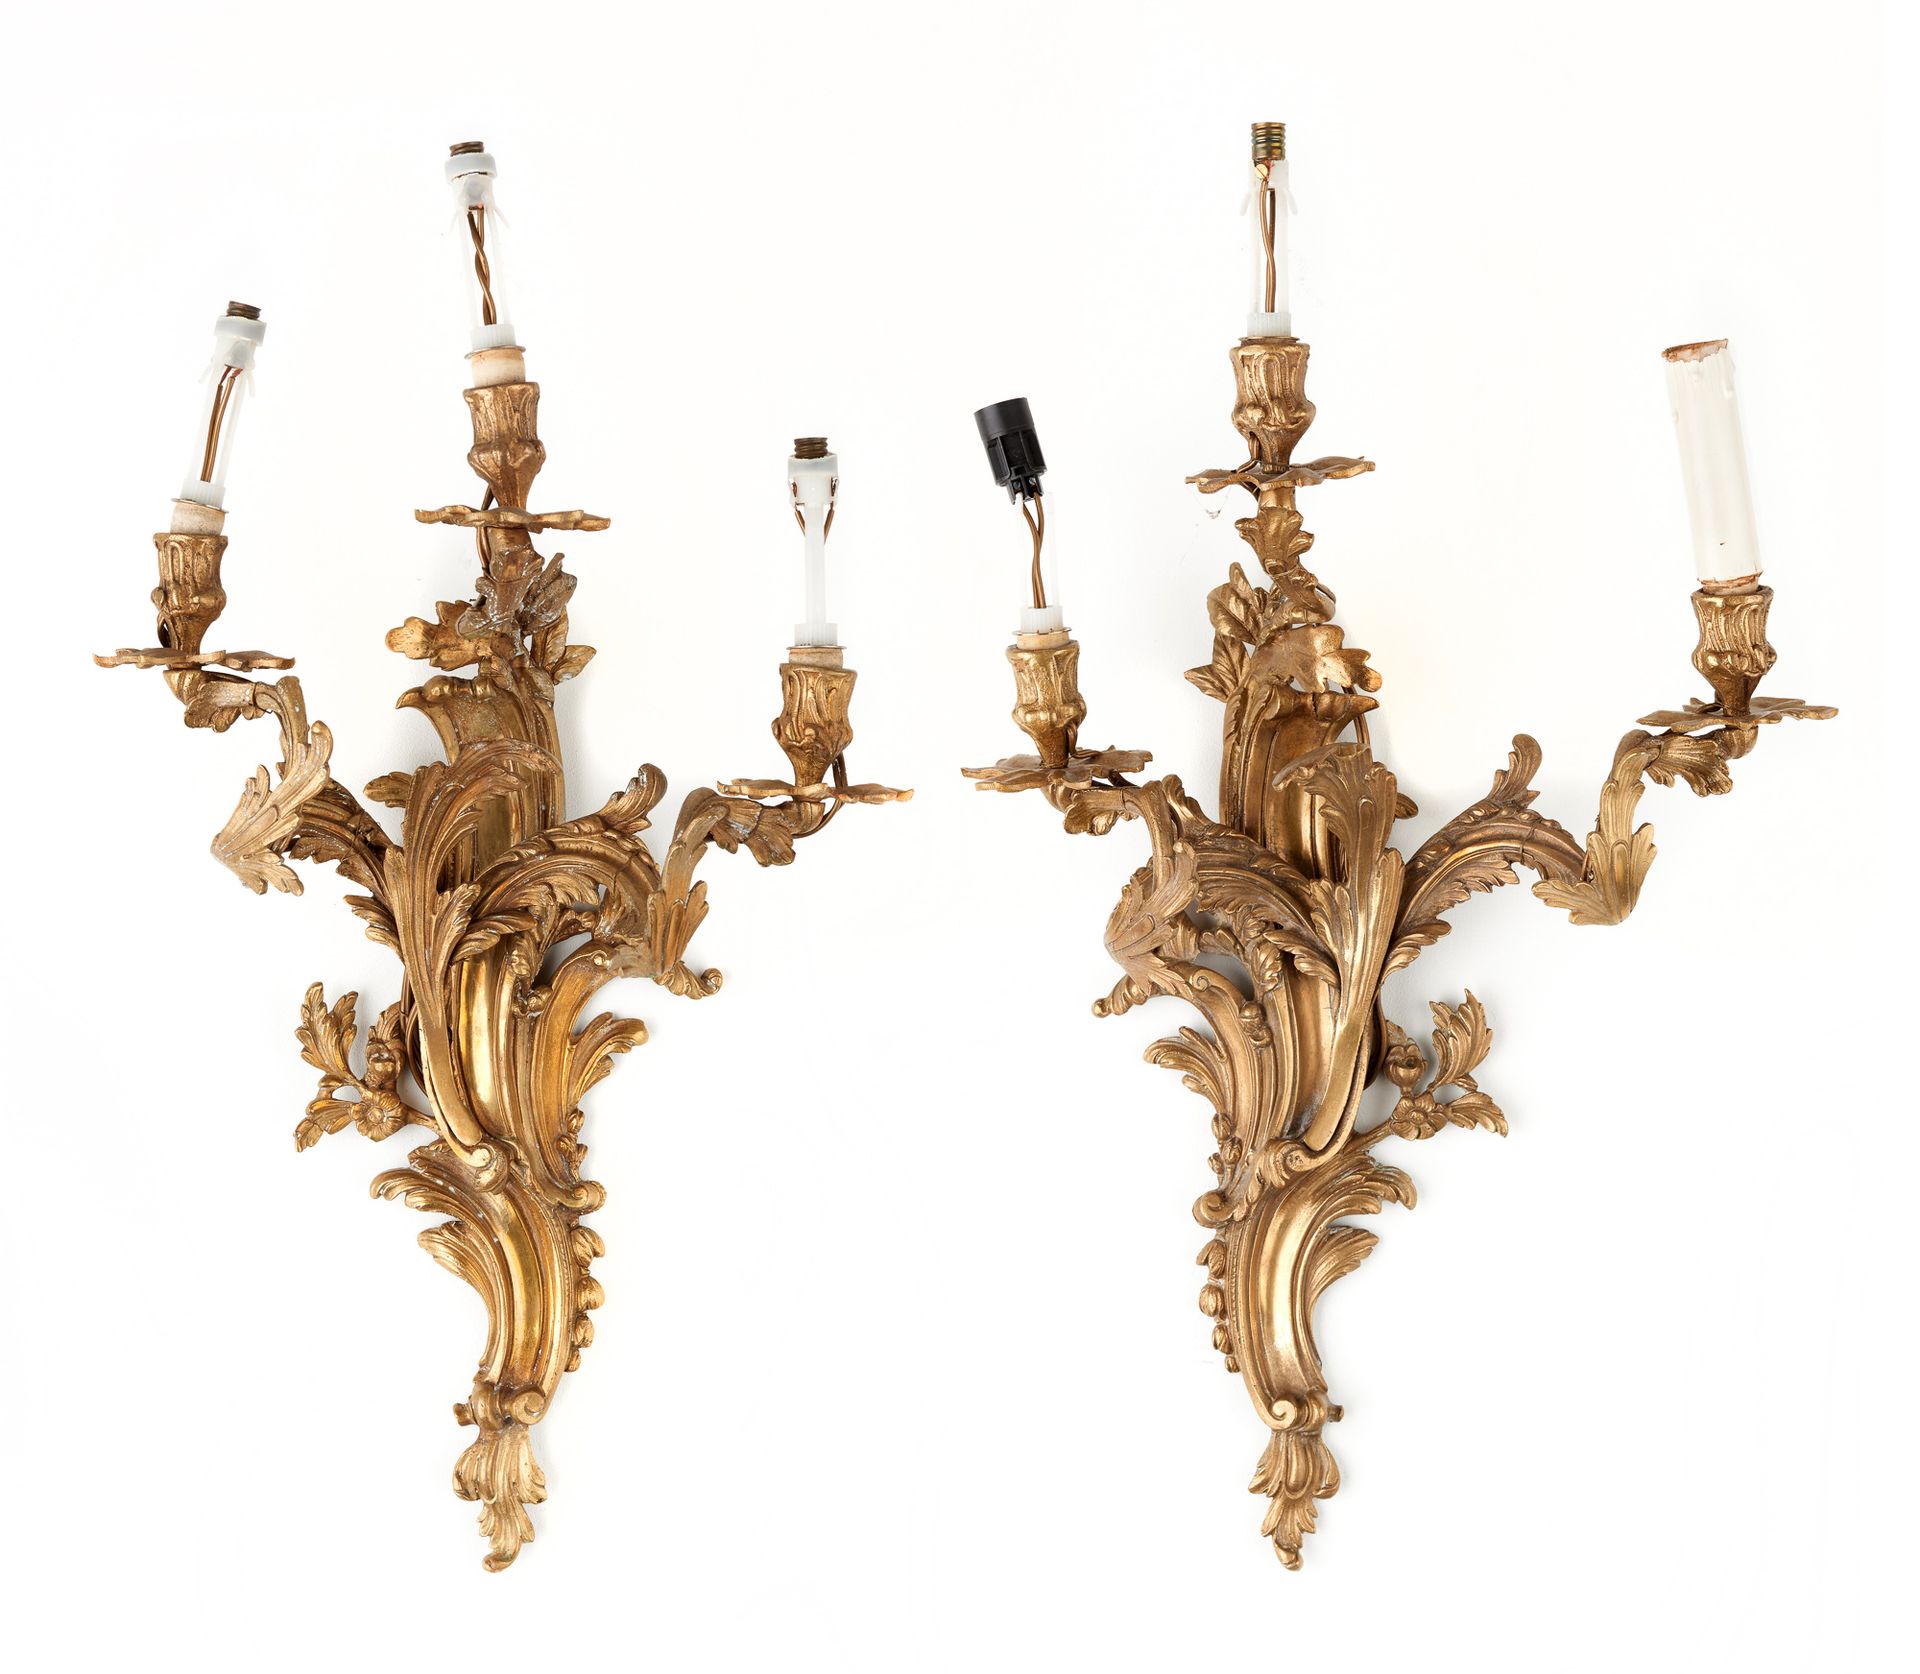 De style Louis XV. Iluminación: Pareja de apliques de ormolina con tres brazos.
&hellip;